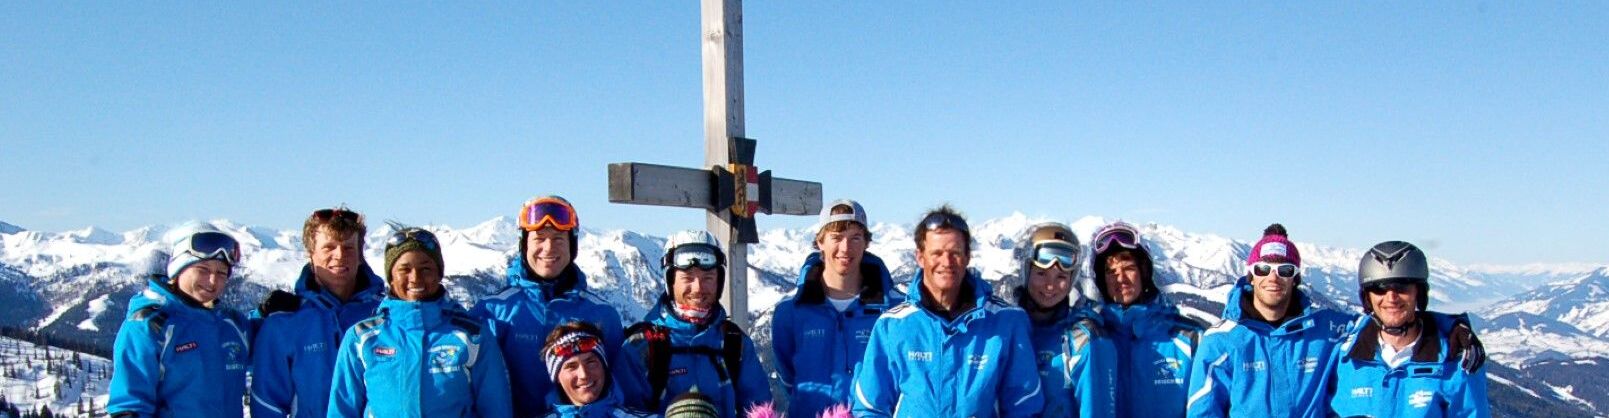 Skischule Flachau - bestens ausgebildete Skilehrer